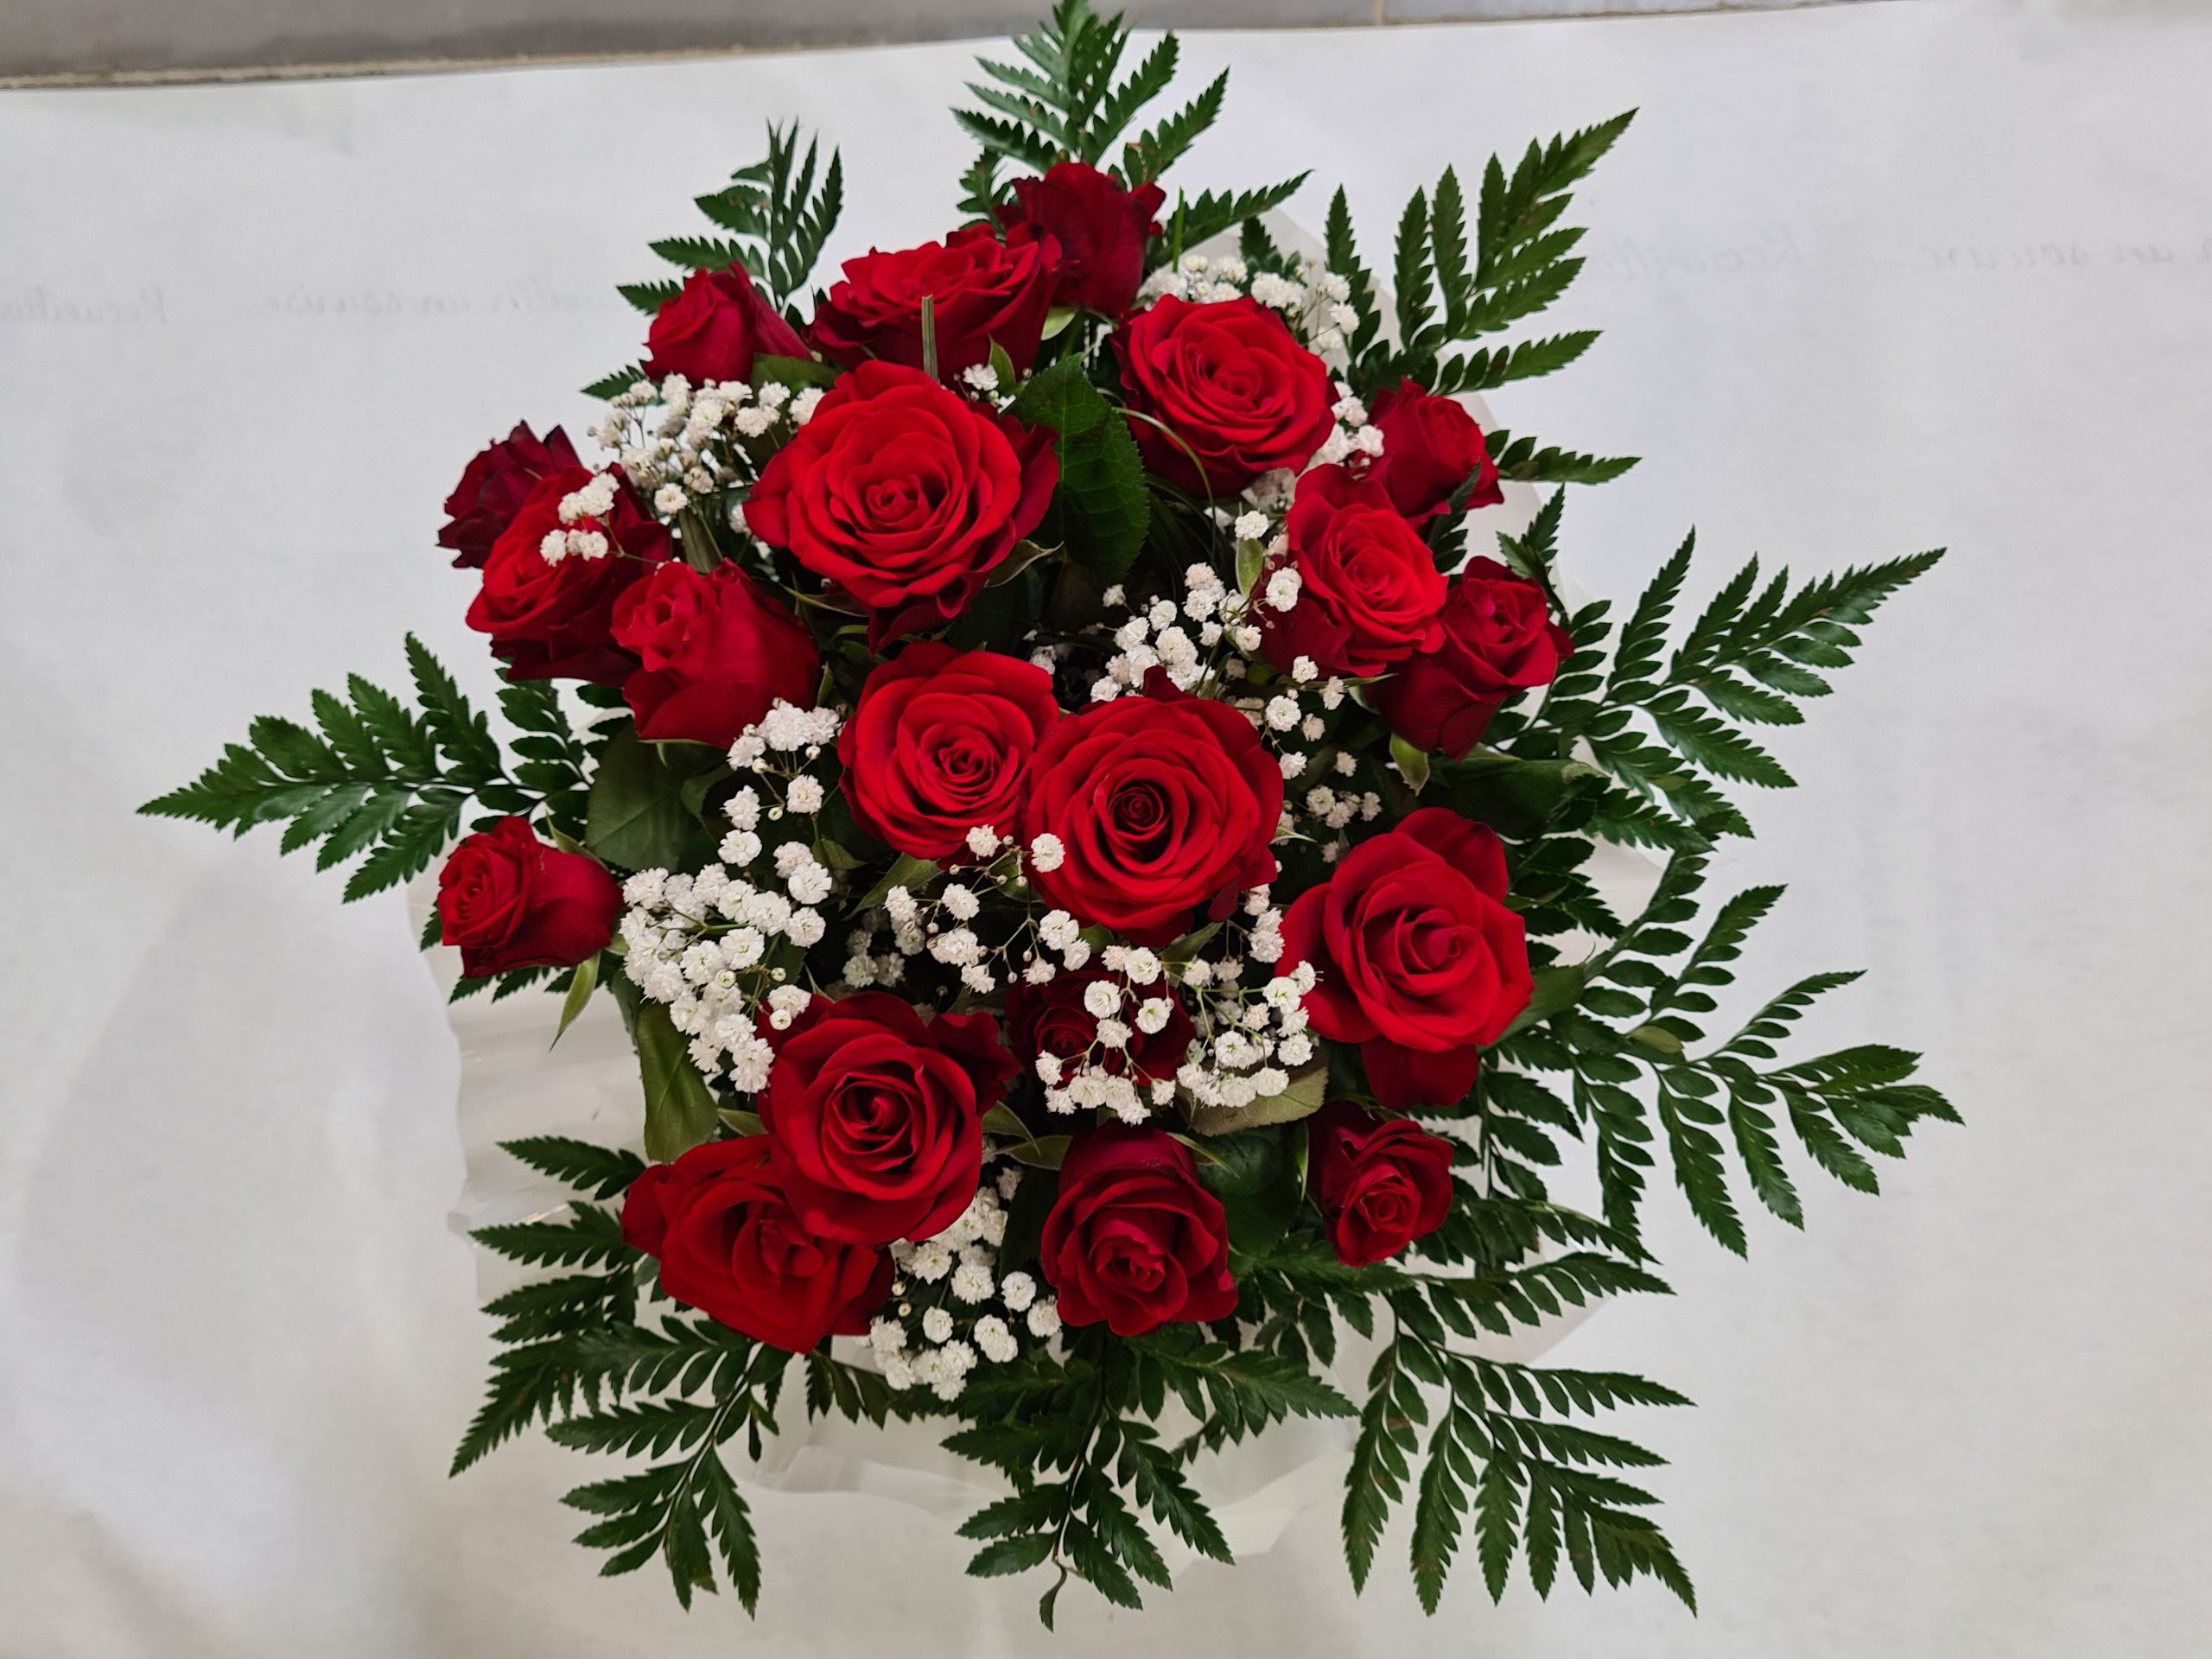 ROMANCE – 20 roses rouges, gypsophile verdure – Achetez vos fleurs